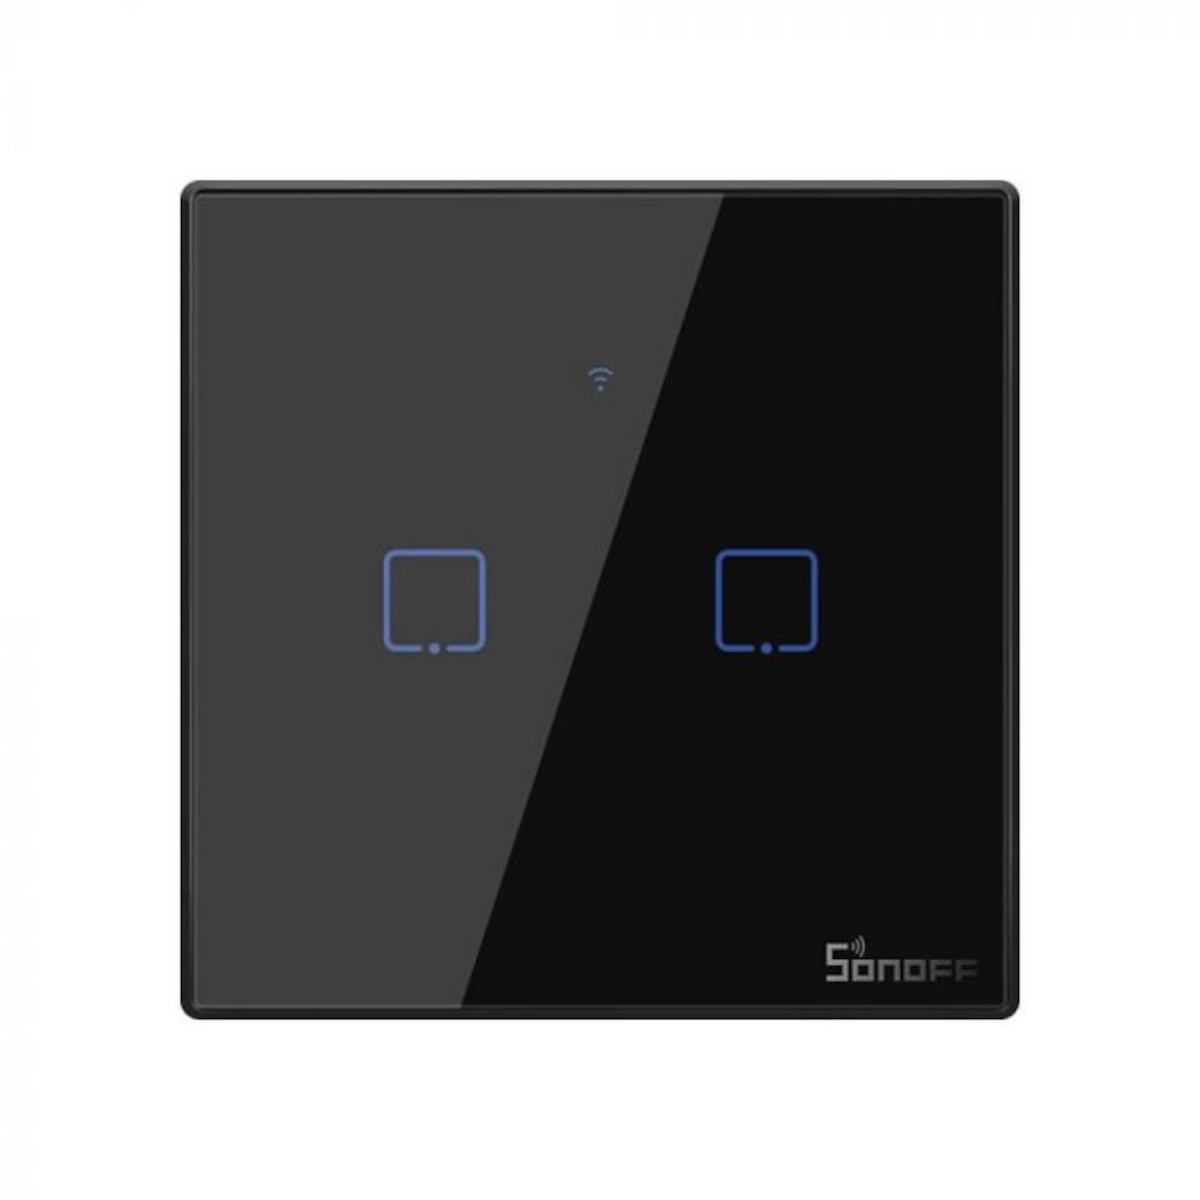 SONOFF WiFi Smart Wandschalter - 2 Taster - schwarz, Frontansicht, vor weißem Hintergrund